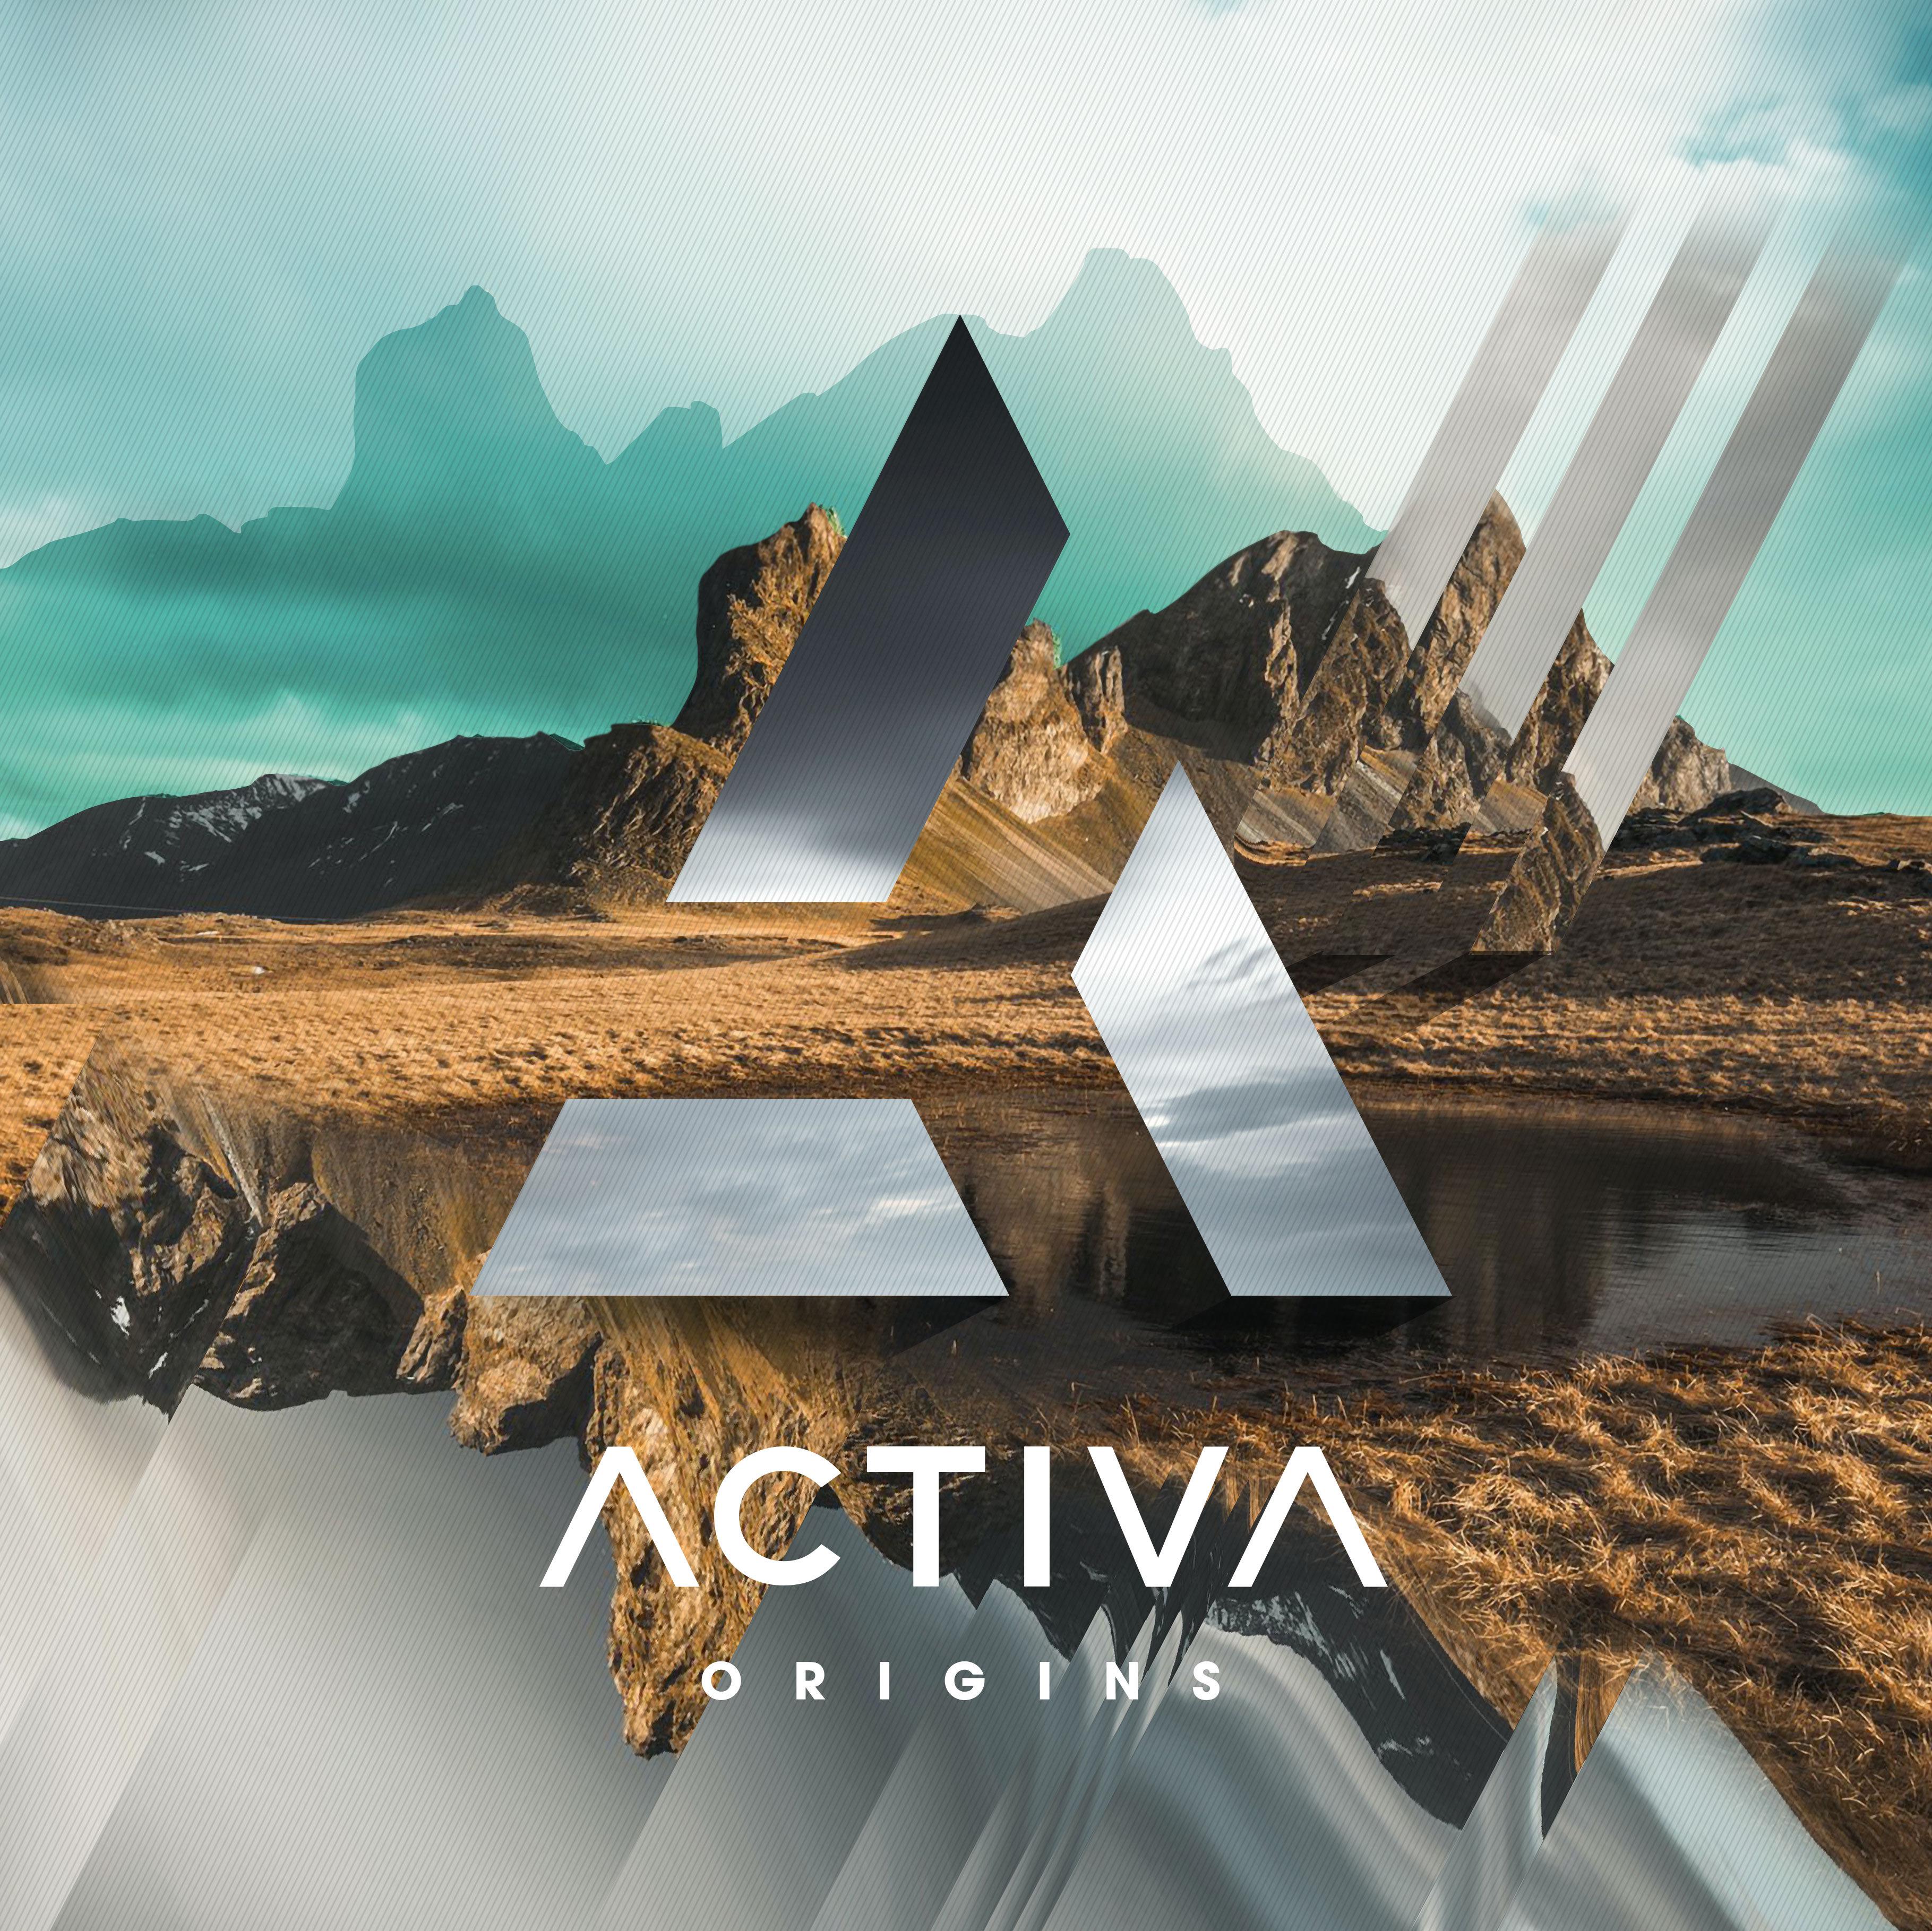 Activa - A Future Memory (Activa’s ‘Origins’ Album Mix)